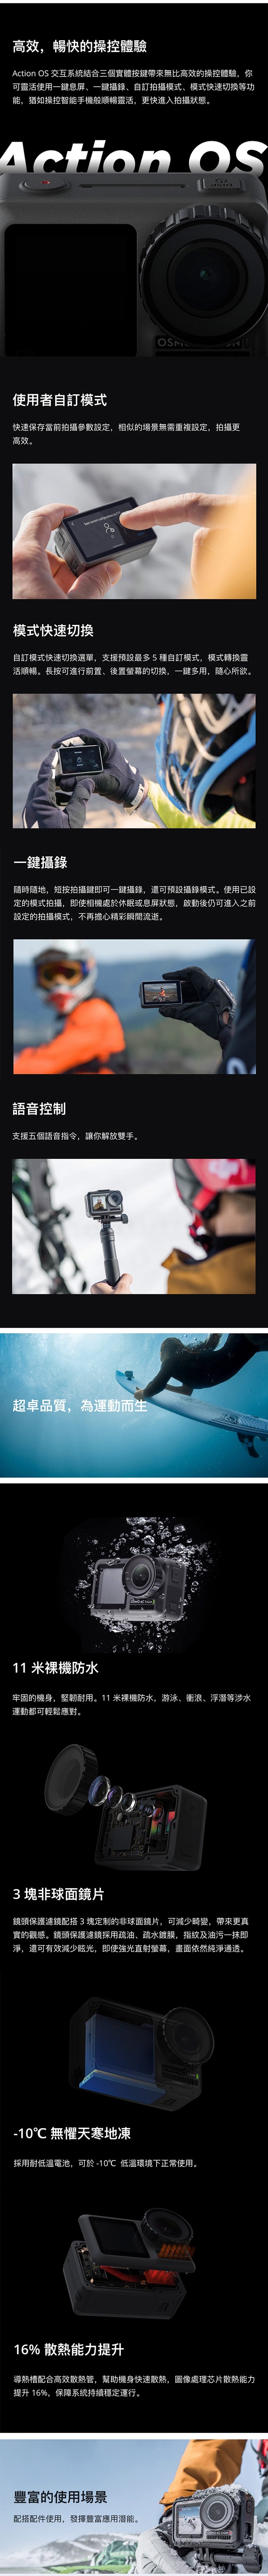 DJI Osmo Action 4K HDR 雙螢幕 / 防水運動相機